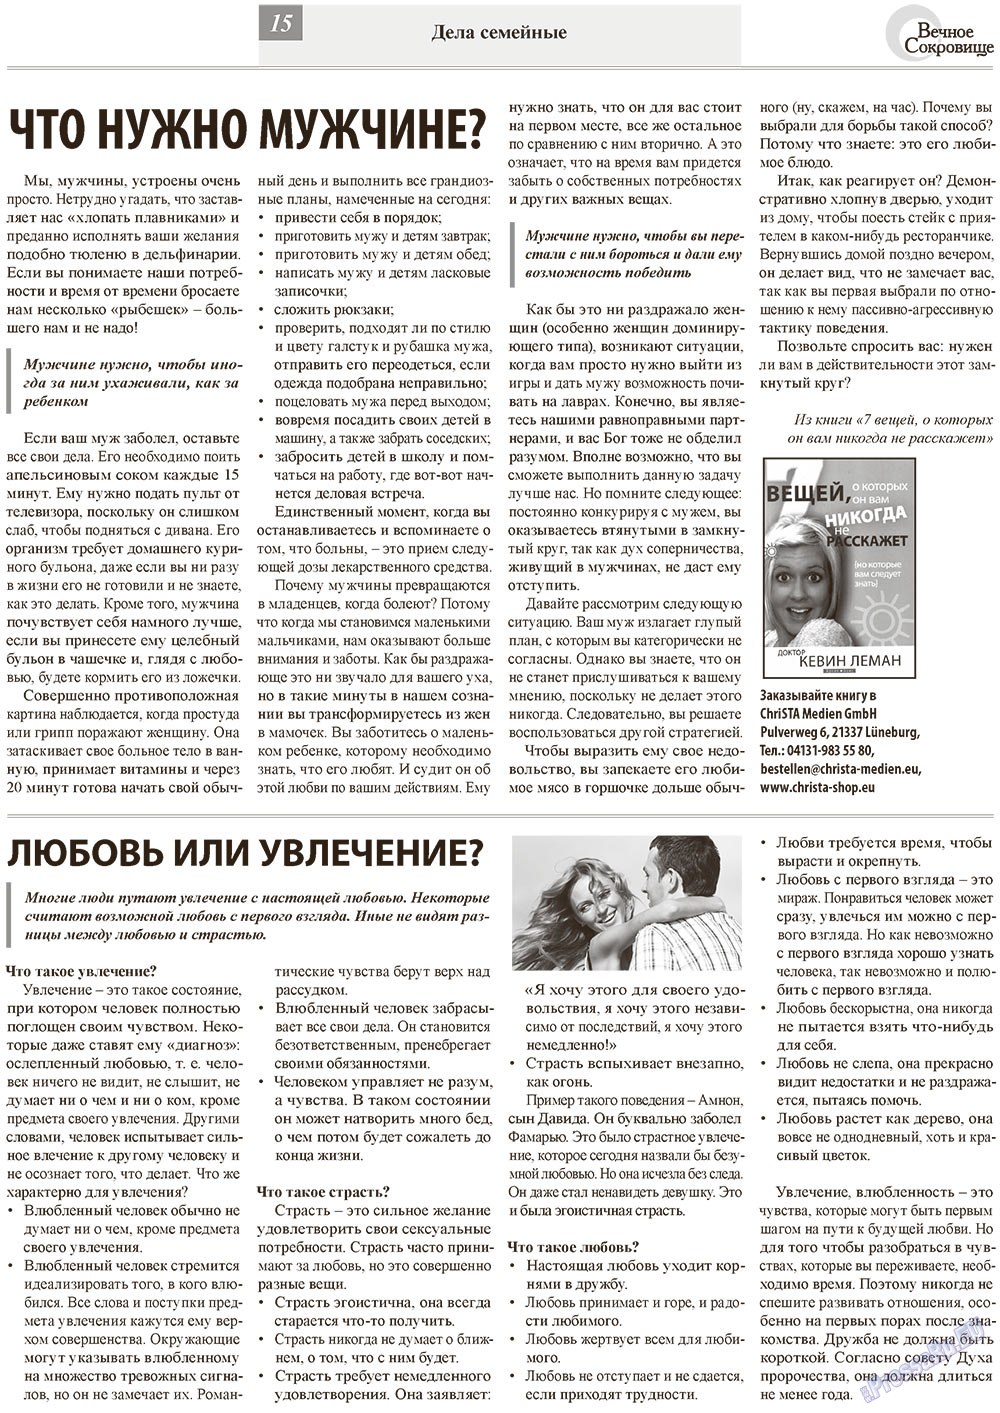 Вечное сокровище (газета). 2013 год, номер 1, стр. 15